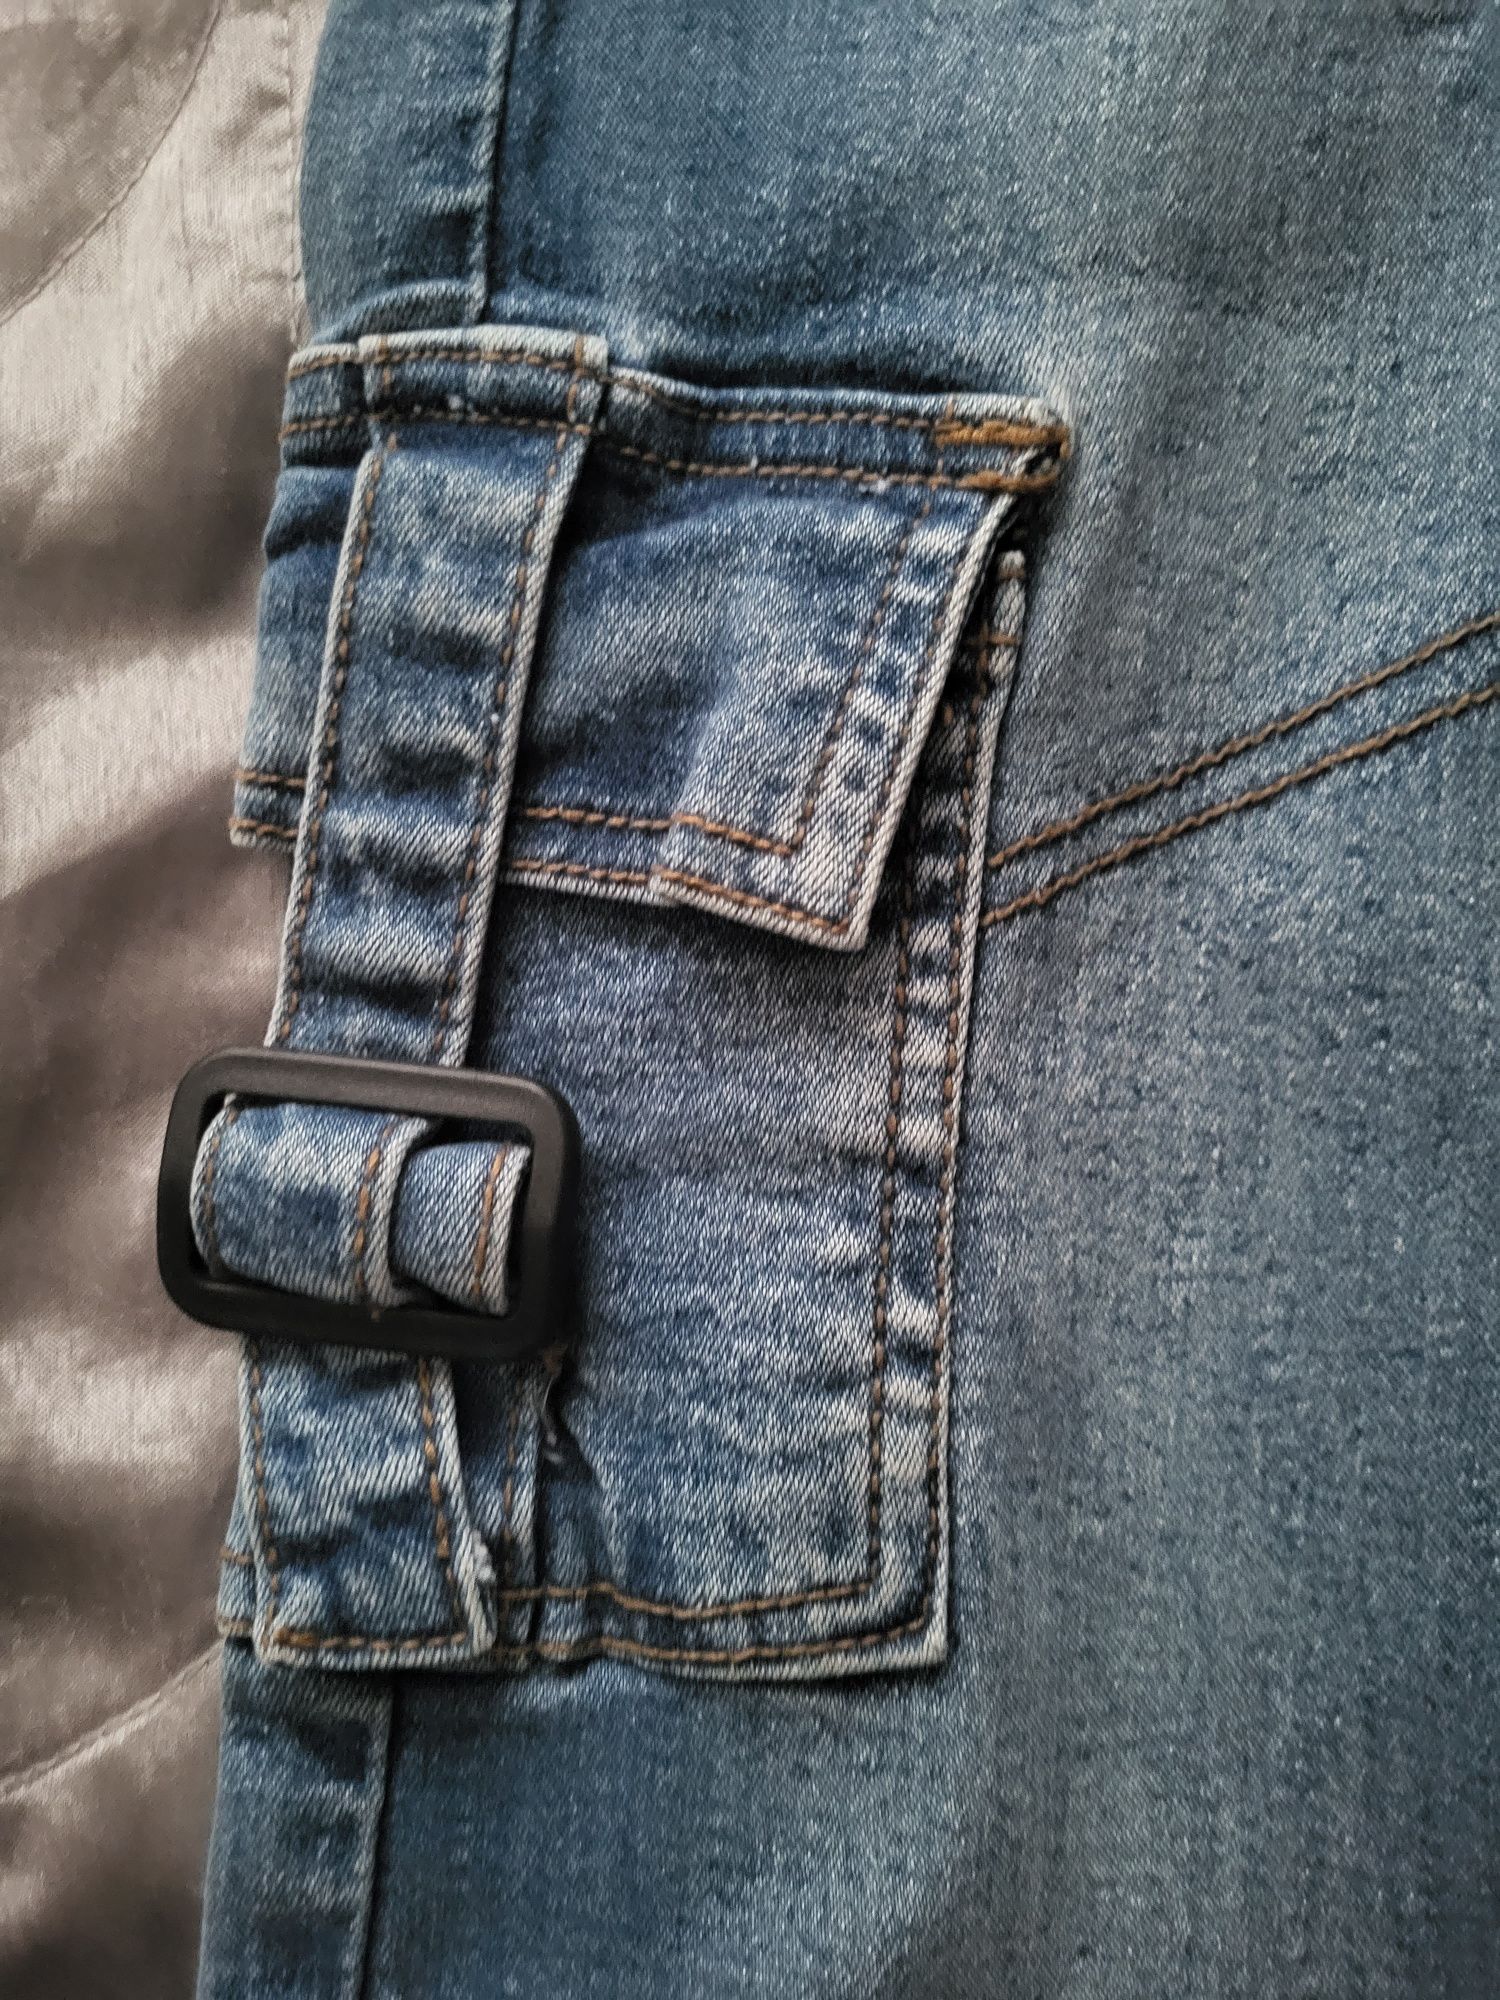 Spodnie jeansowe r. 116